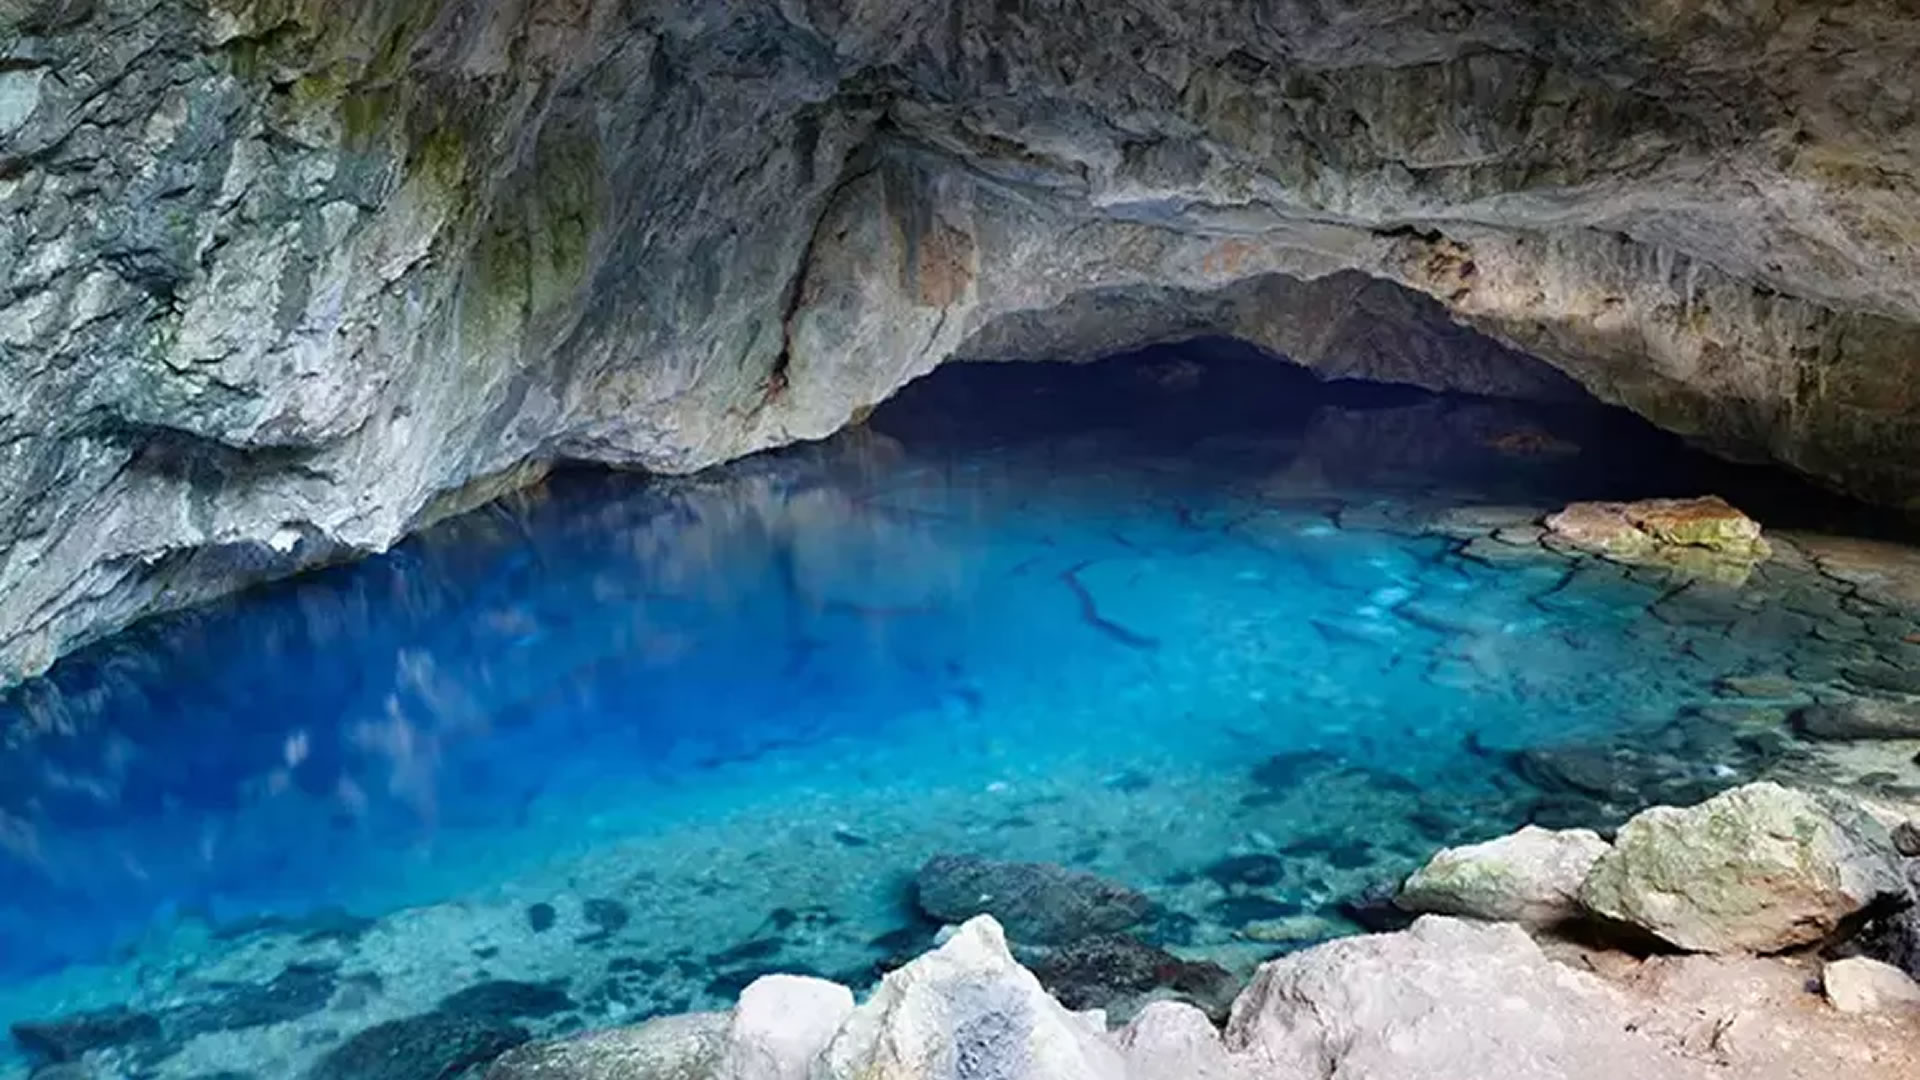 Zeus's Cave